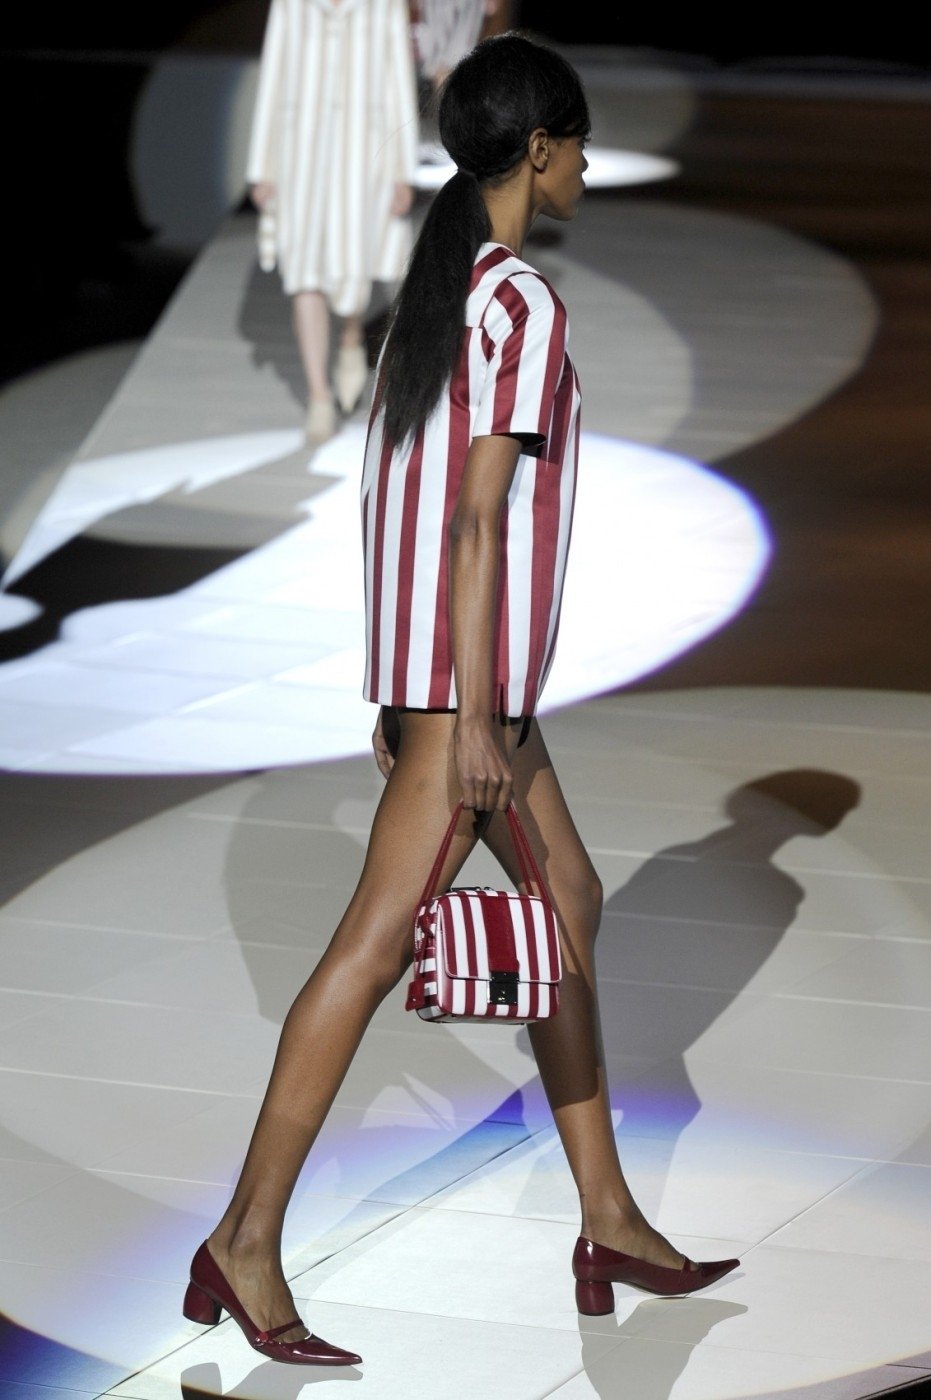 Marc Jacobs představi na New York fashion weeku svou pruhovanou kolekci na jaro 2013.